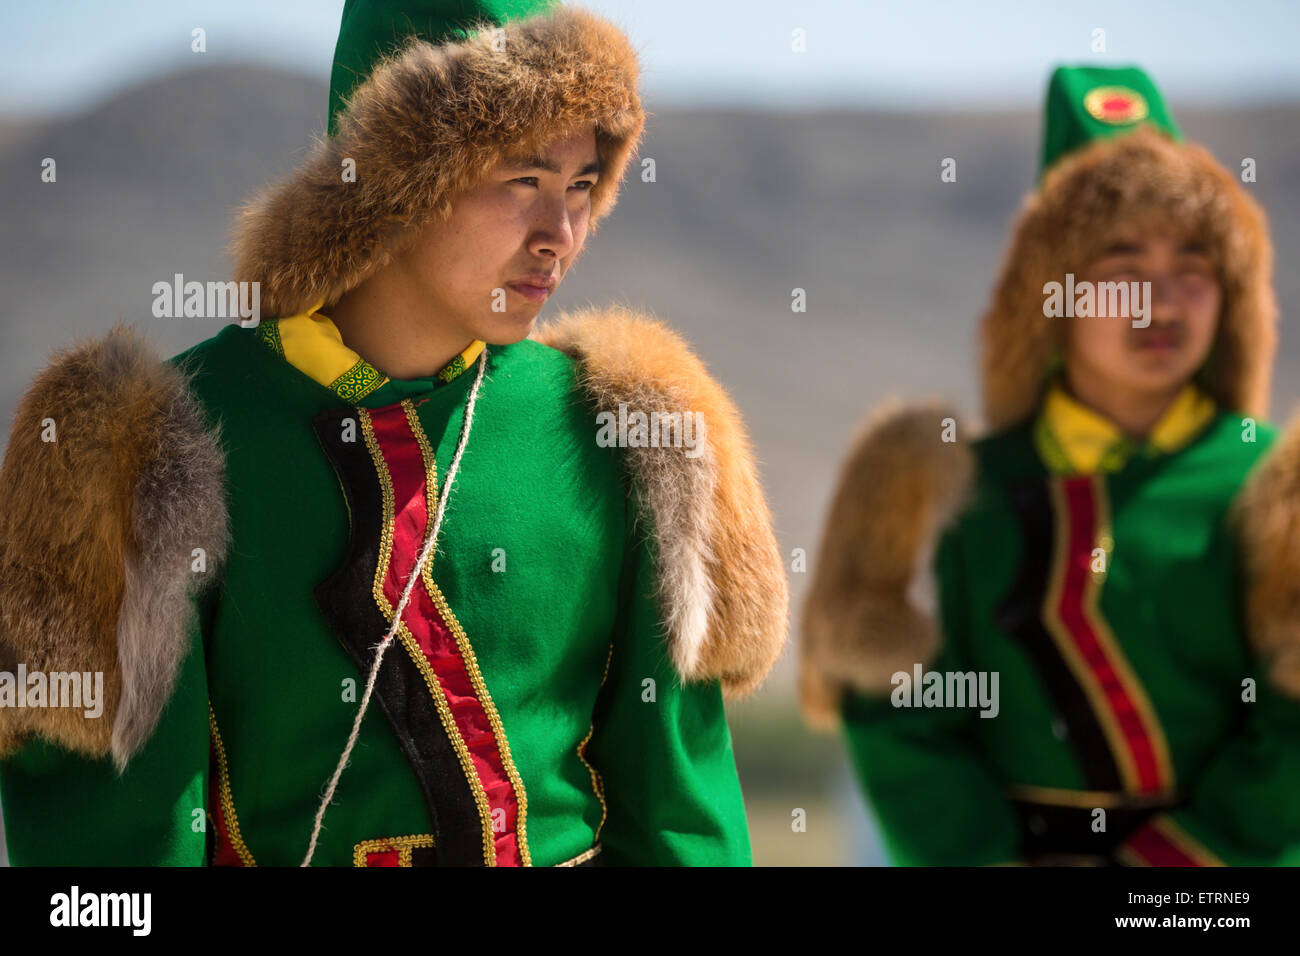 Irkutsk region, Russia. 14th June, 2015. The international ethno-cultural festival Erdyn Games (Erdyn Naadan) in Irkutsk Region near Baikal lake, Russia Stock Photo